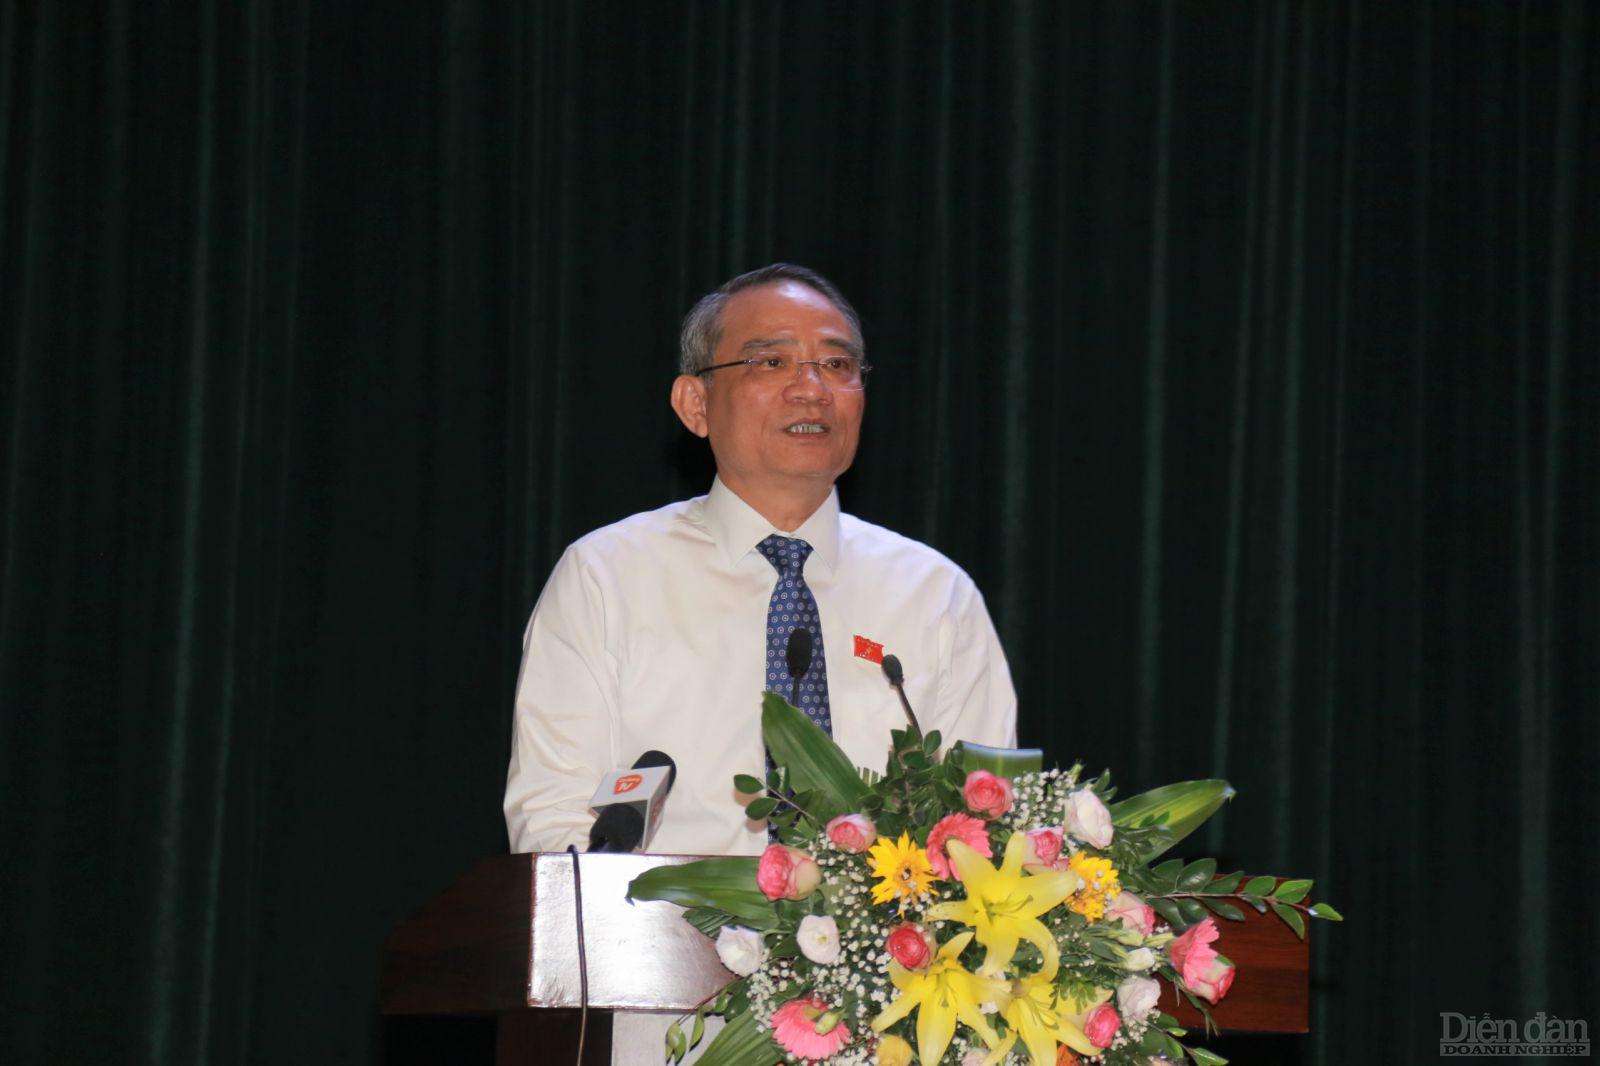 Ông Trương Quang Nghĩa khẳng định việc phát triển bền vững là mục tiêu lớn nhất trong của thành phố trong thời gian tới, không đánh đổi môi trường lấy tăng trưởng kinh tế.